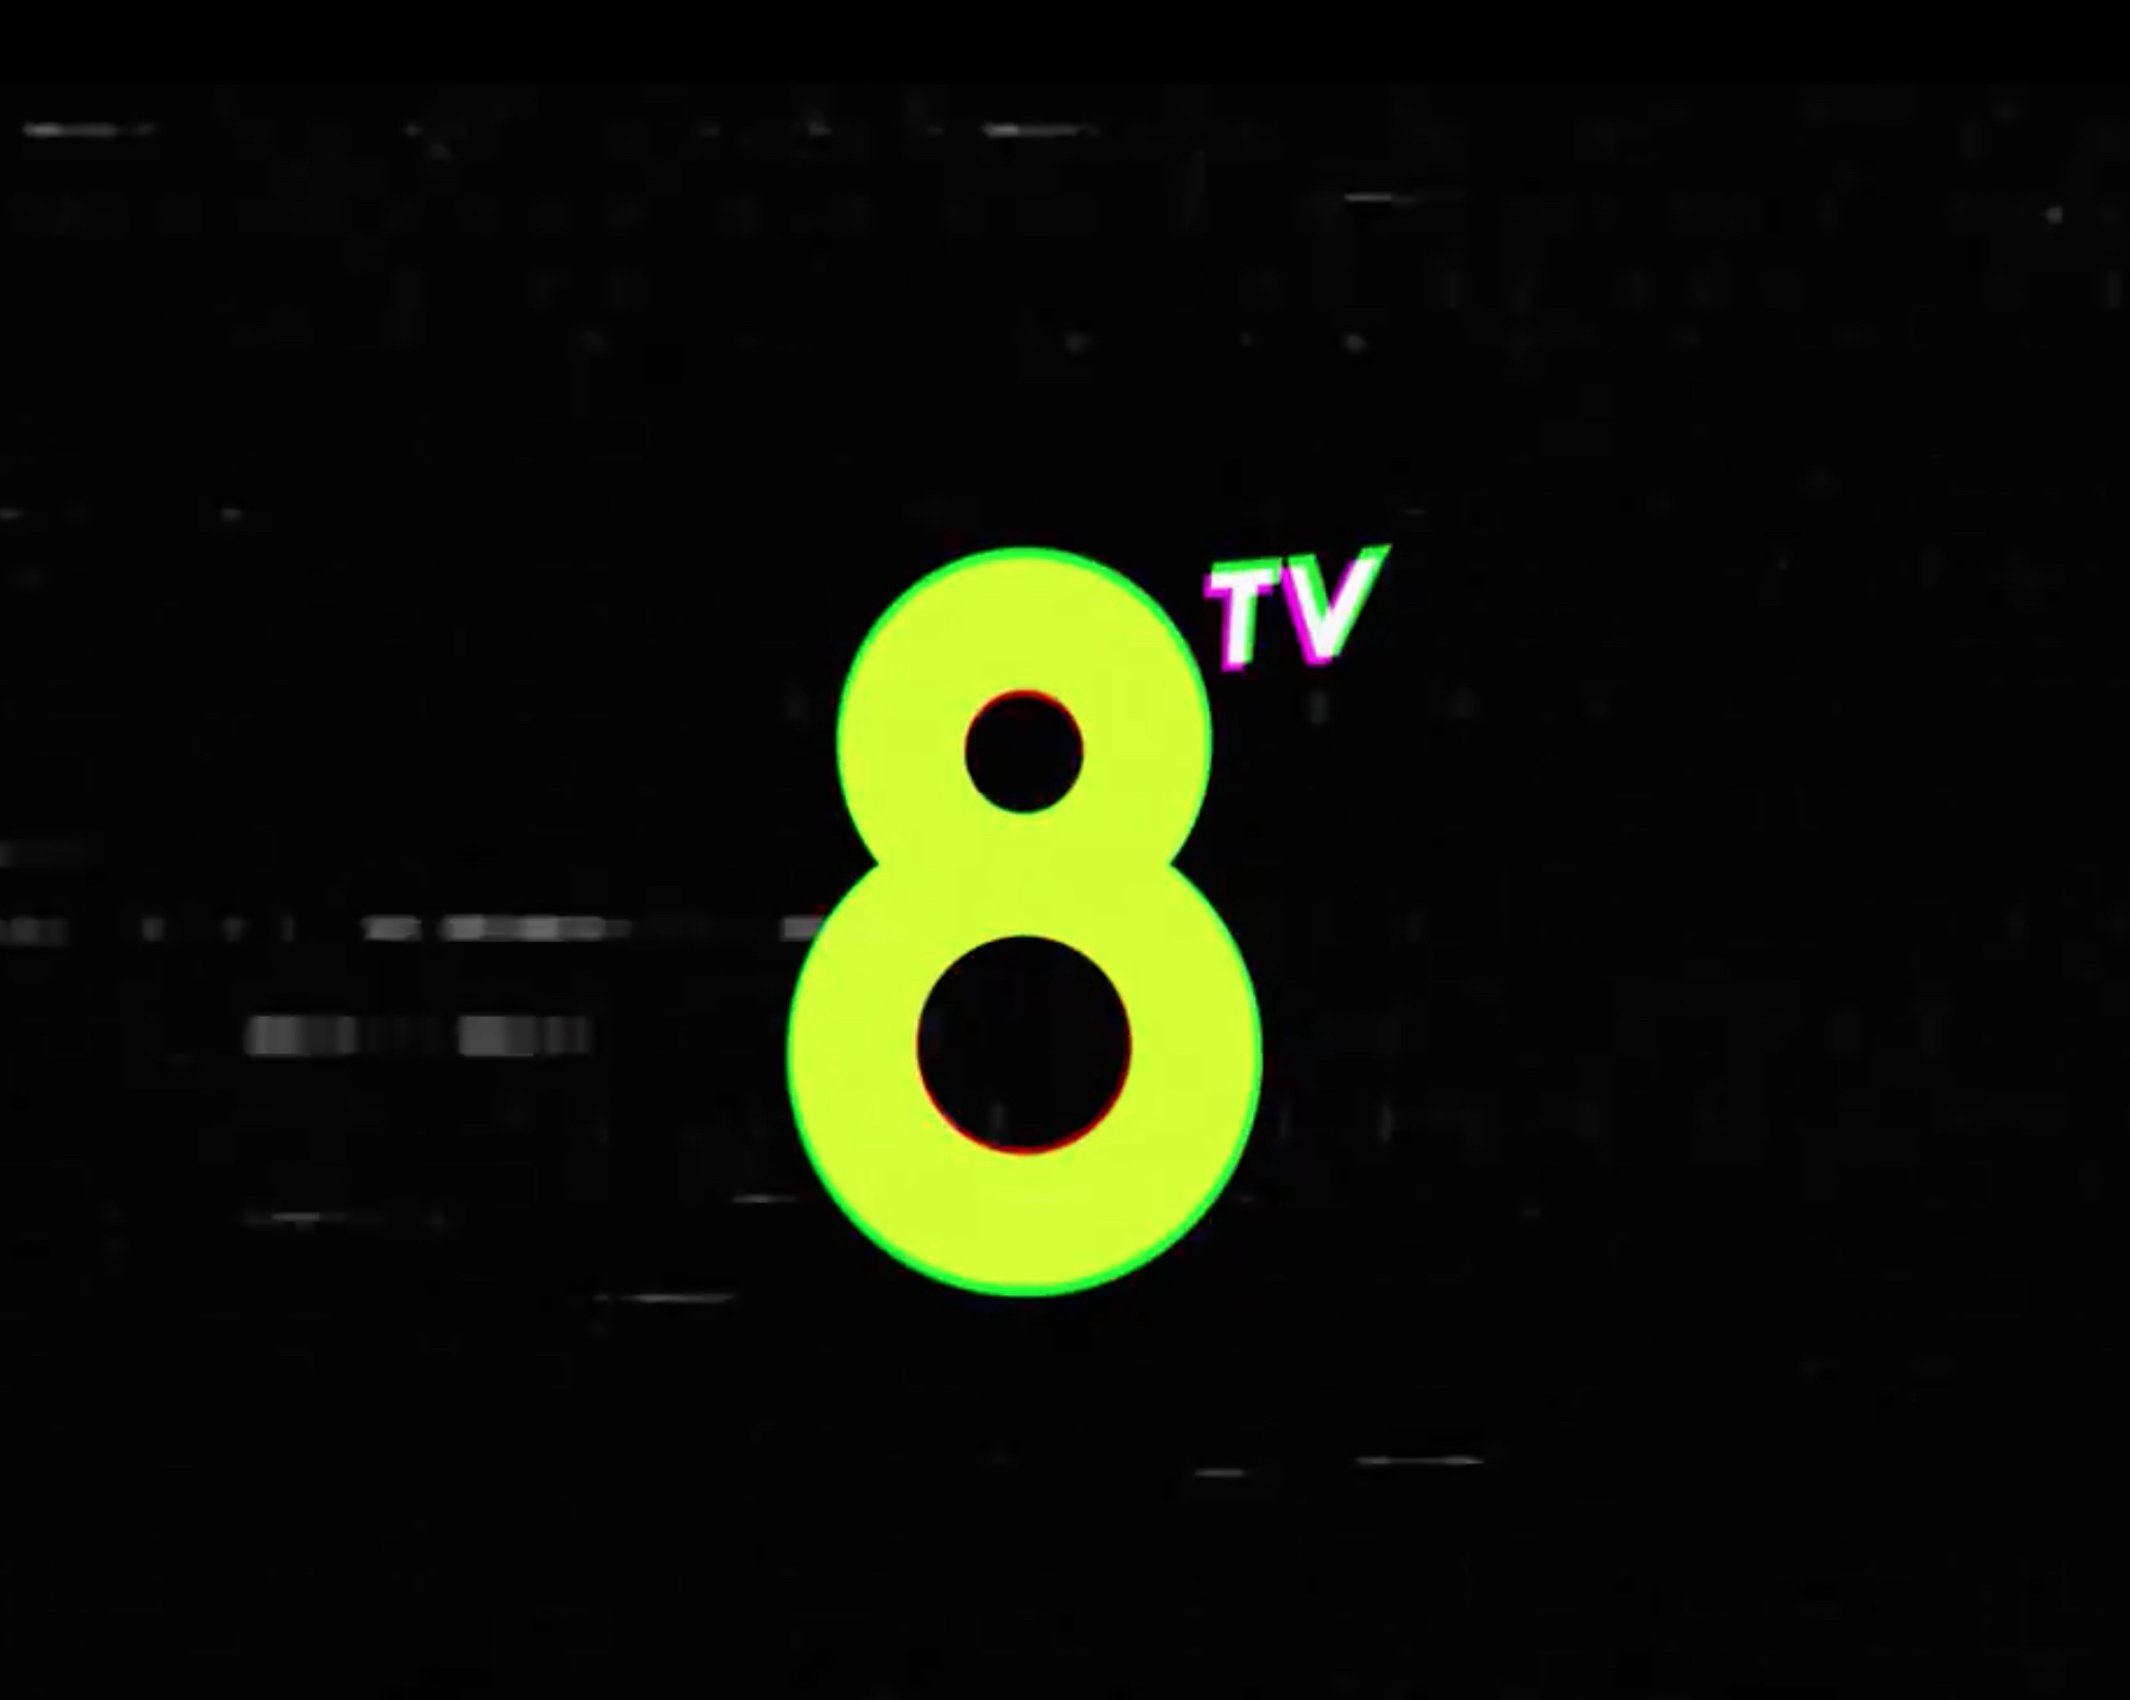 La nueva 8tv se estrena en redes con un claro mensaje desafiando a TV3